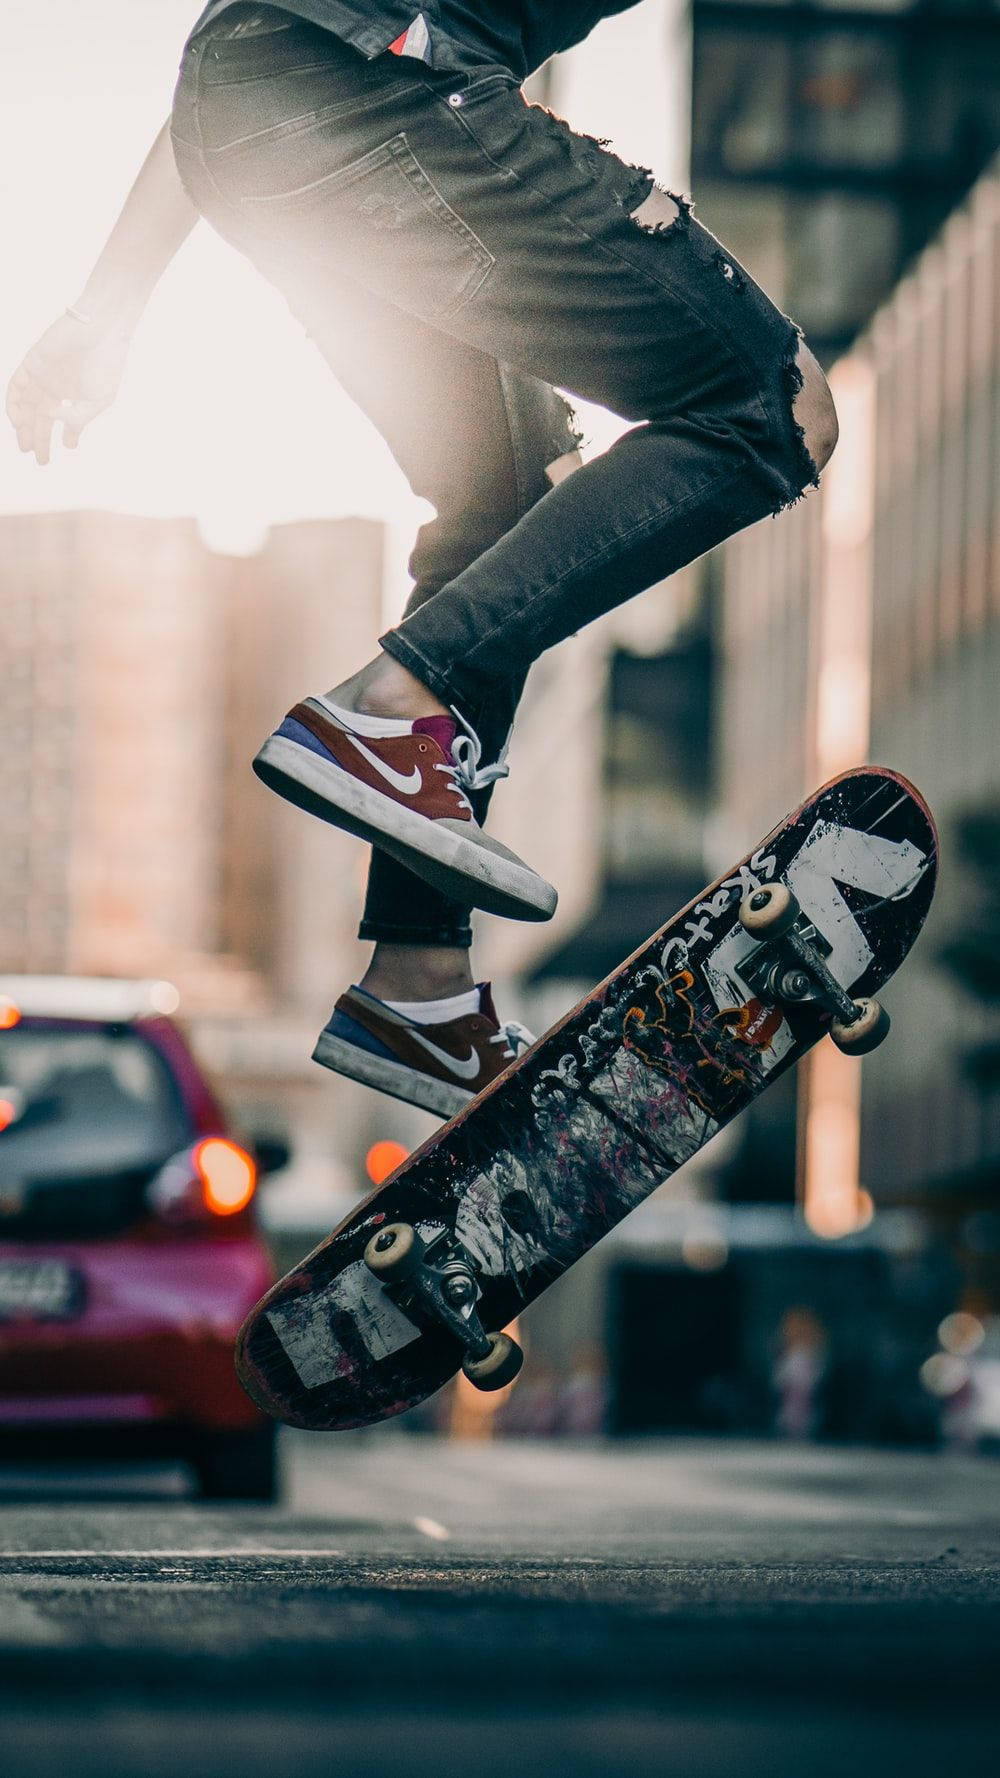 Aesthetic Skateboard On The Road Wallpaper